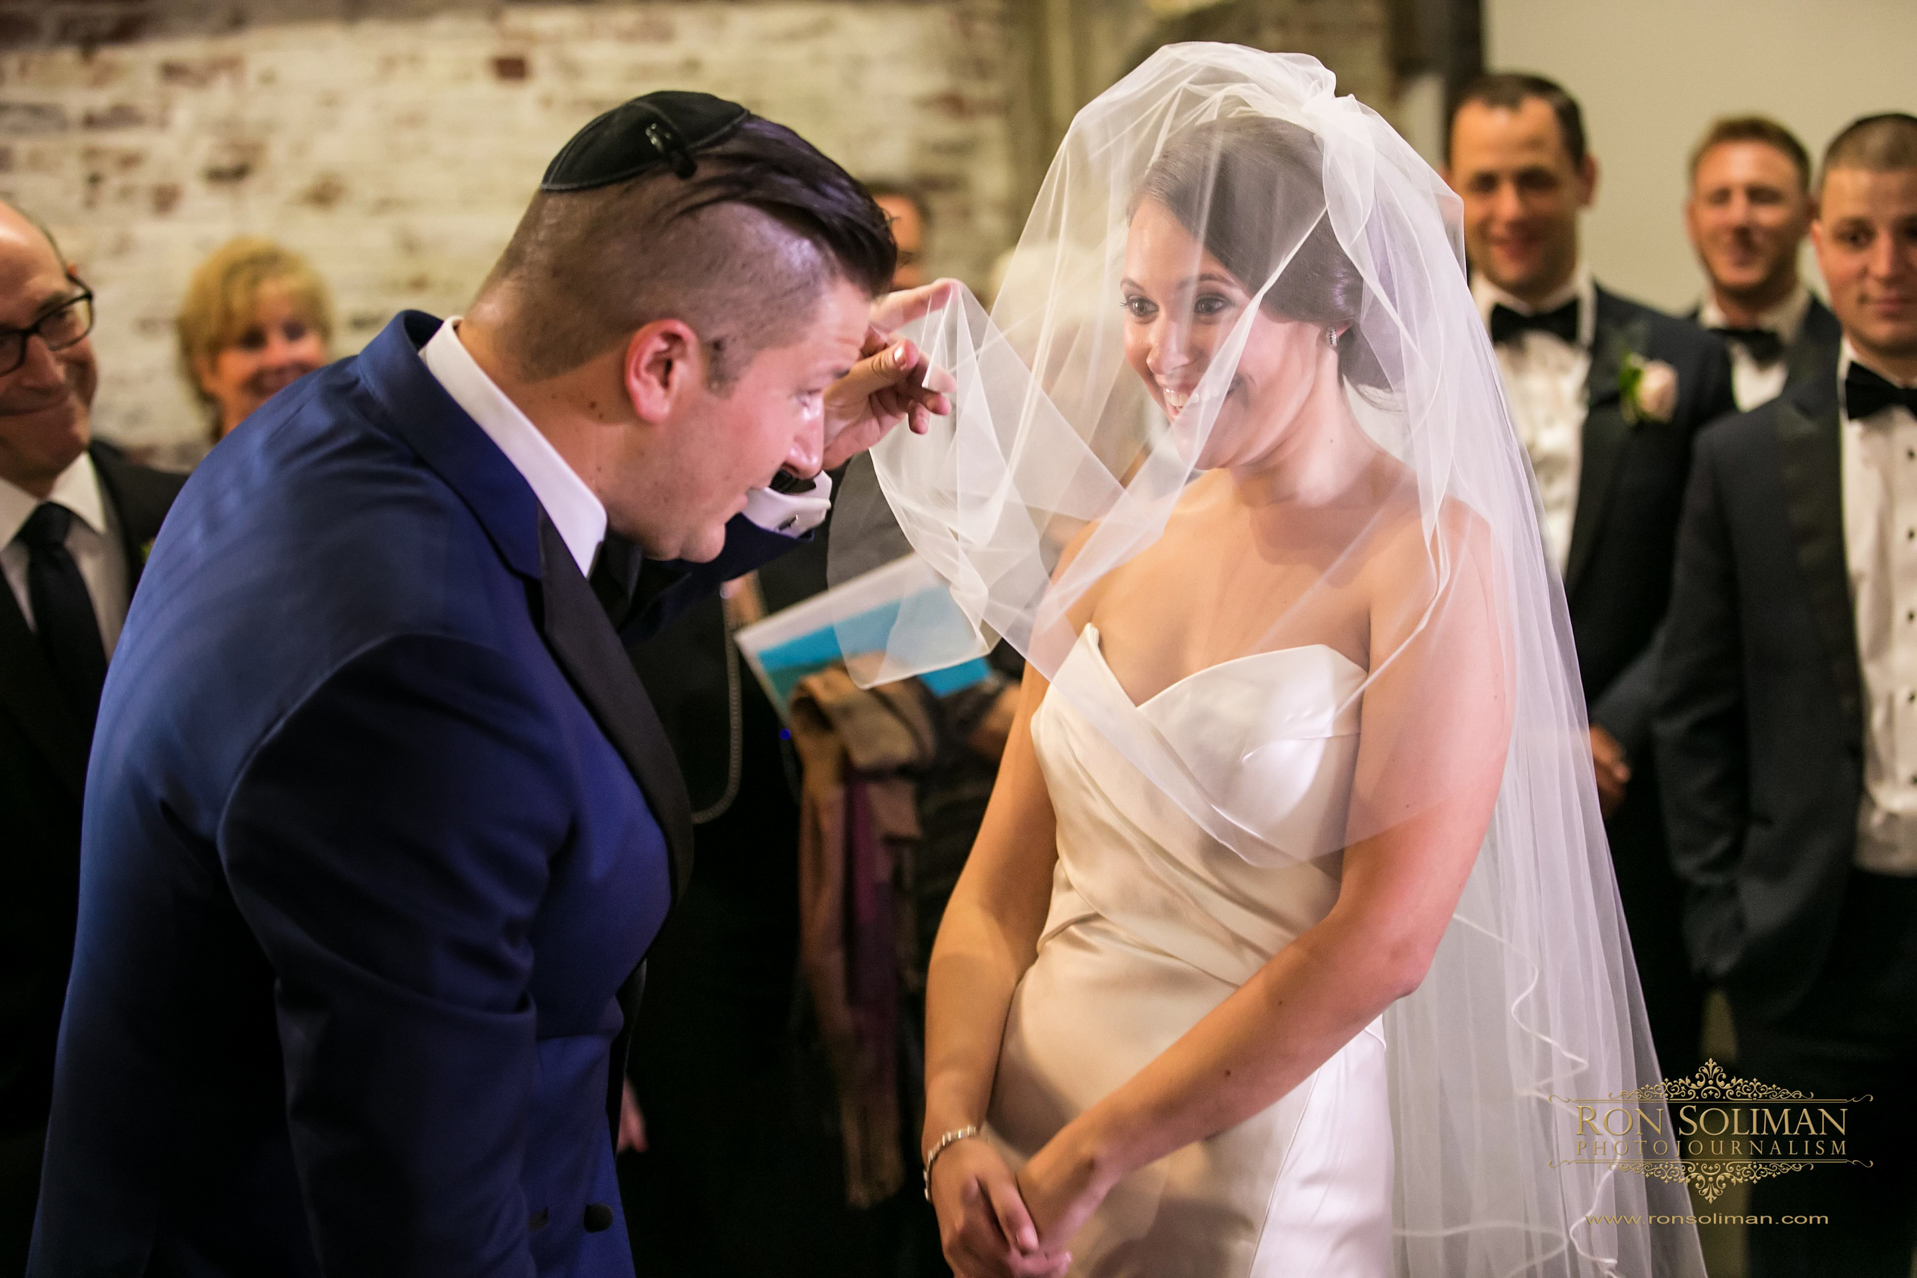 Best Jewish wedding photos